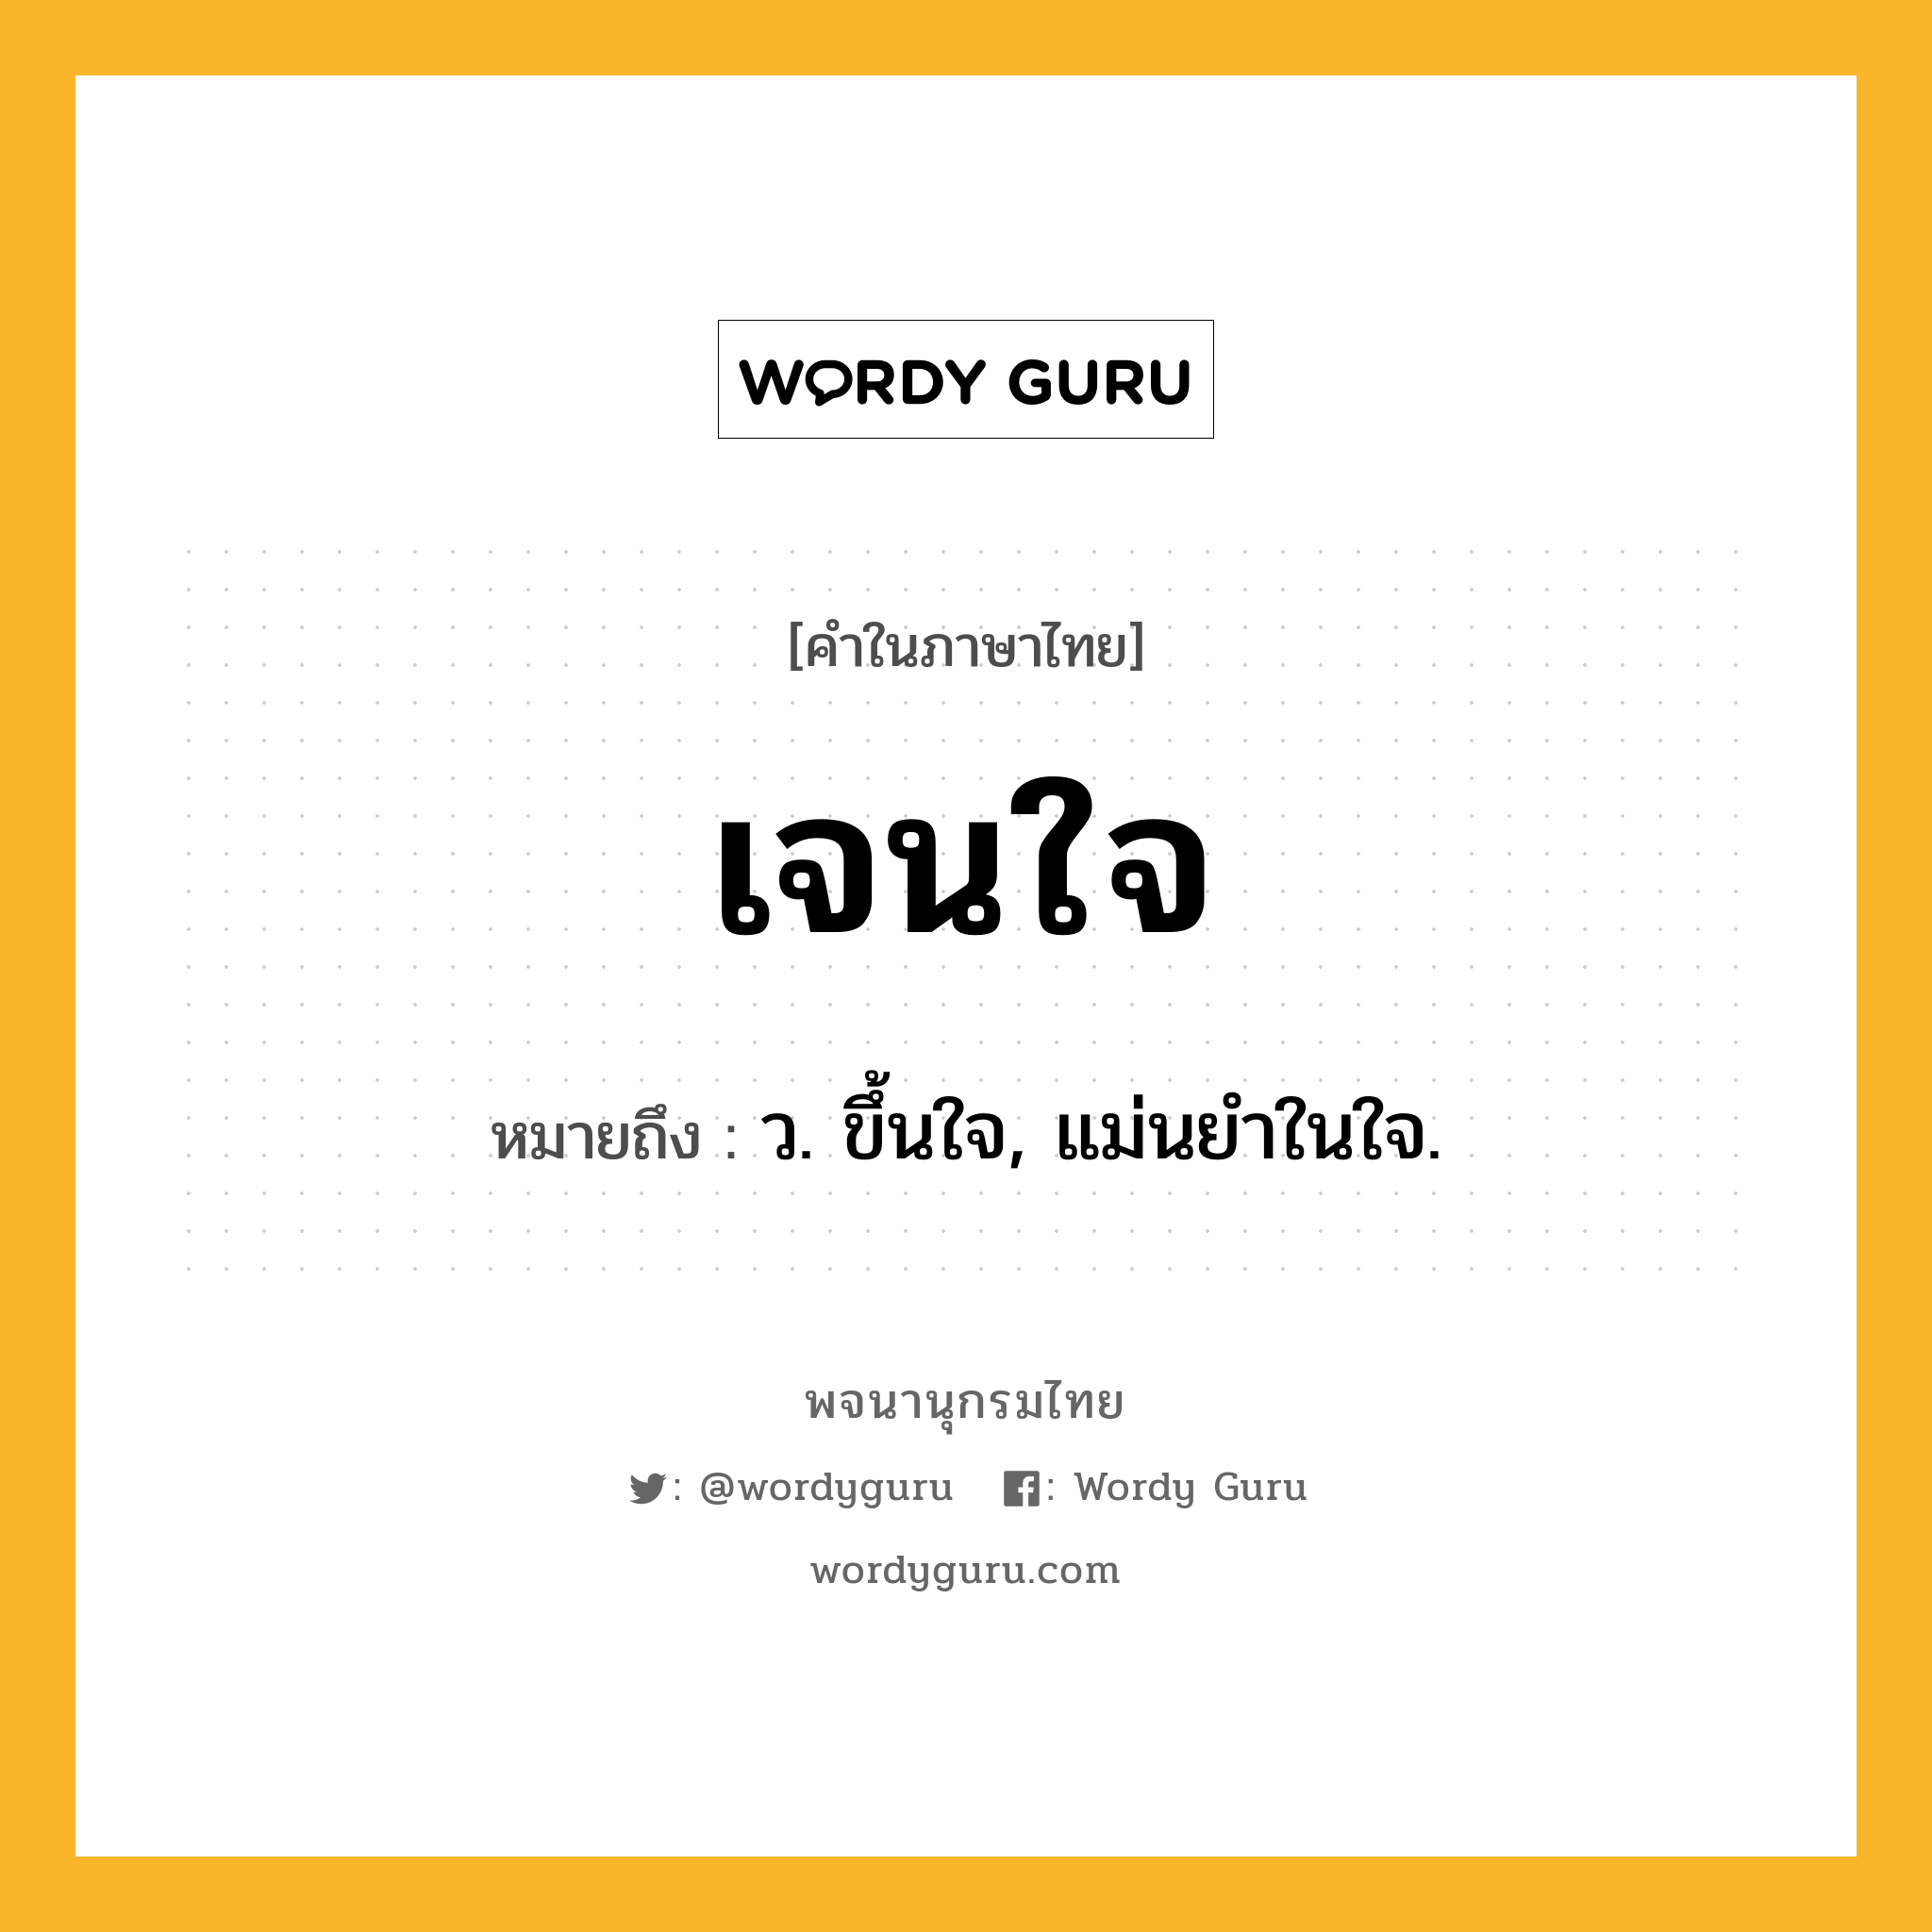 เจนใจ ความหมาย หมายถึงอะไร?, คำในภาษาไทย เจนใจ หมายถึง ว. ขึ้นใจ, แม่นยําในใจ.